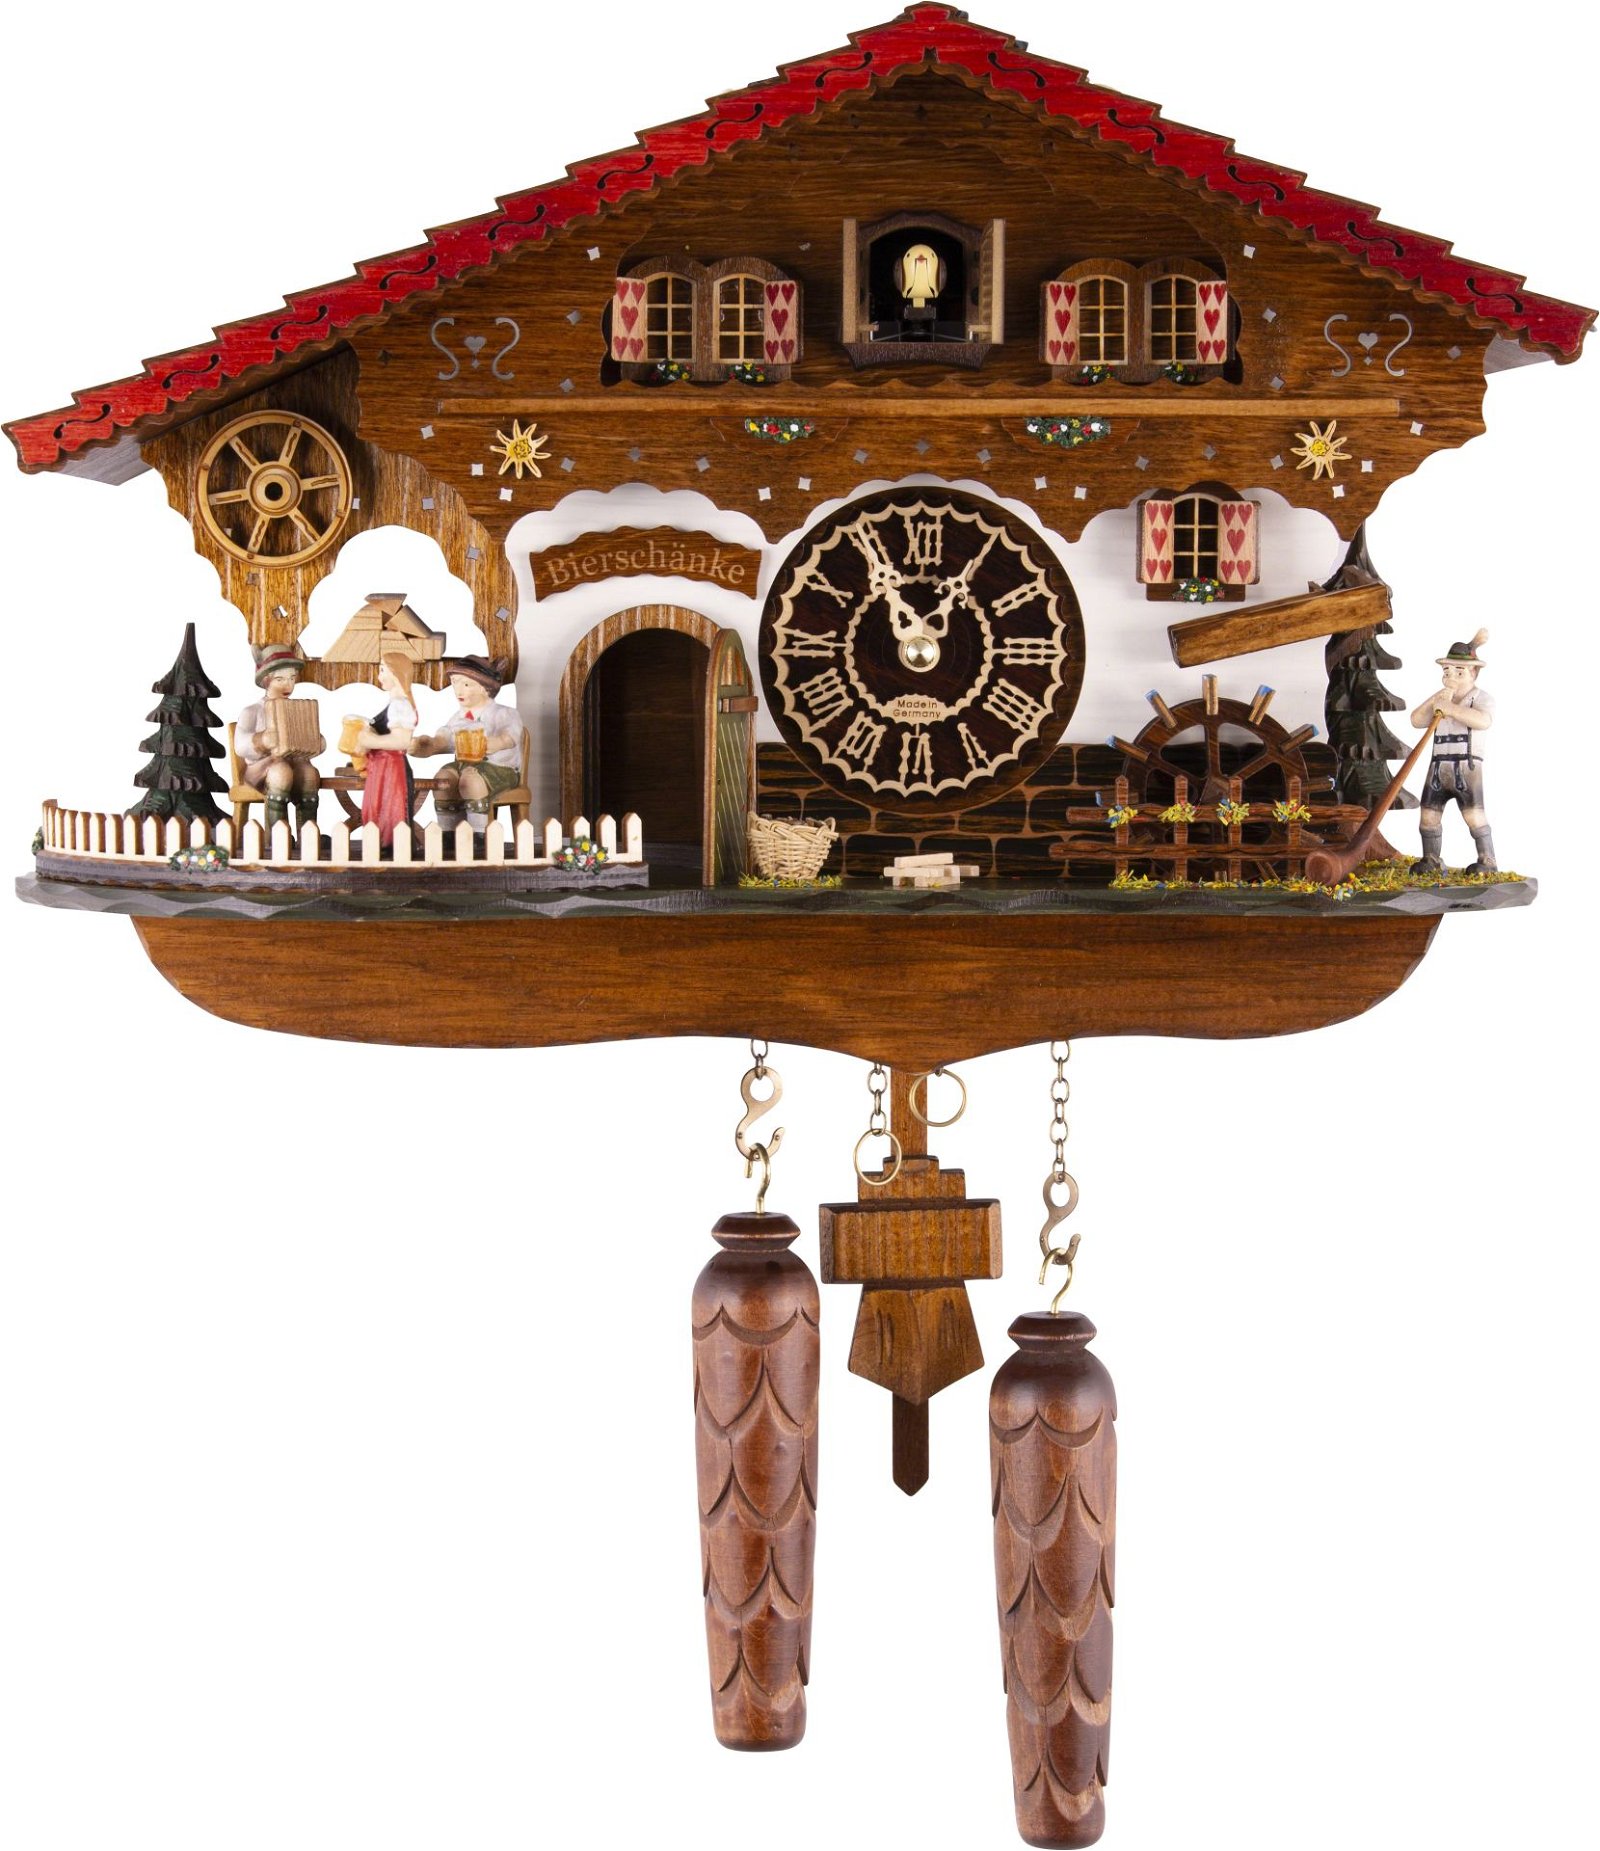 Kuckucksuhr Chalet-Stil Quarz-Uhrwerk 27cm von Trenkle Uhren